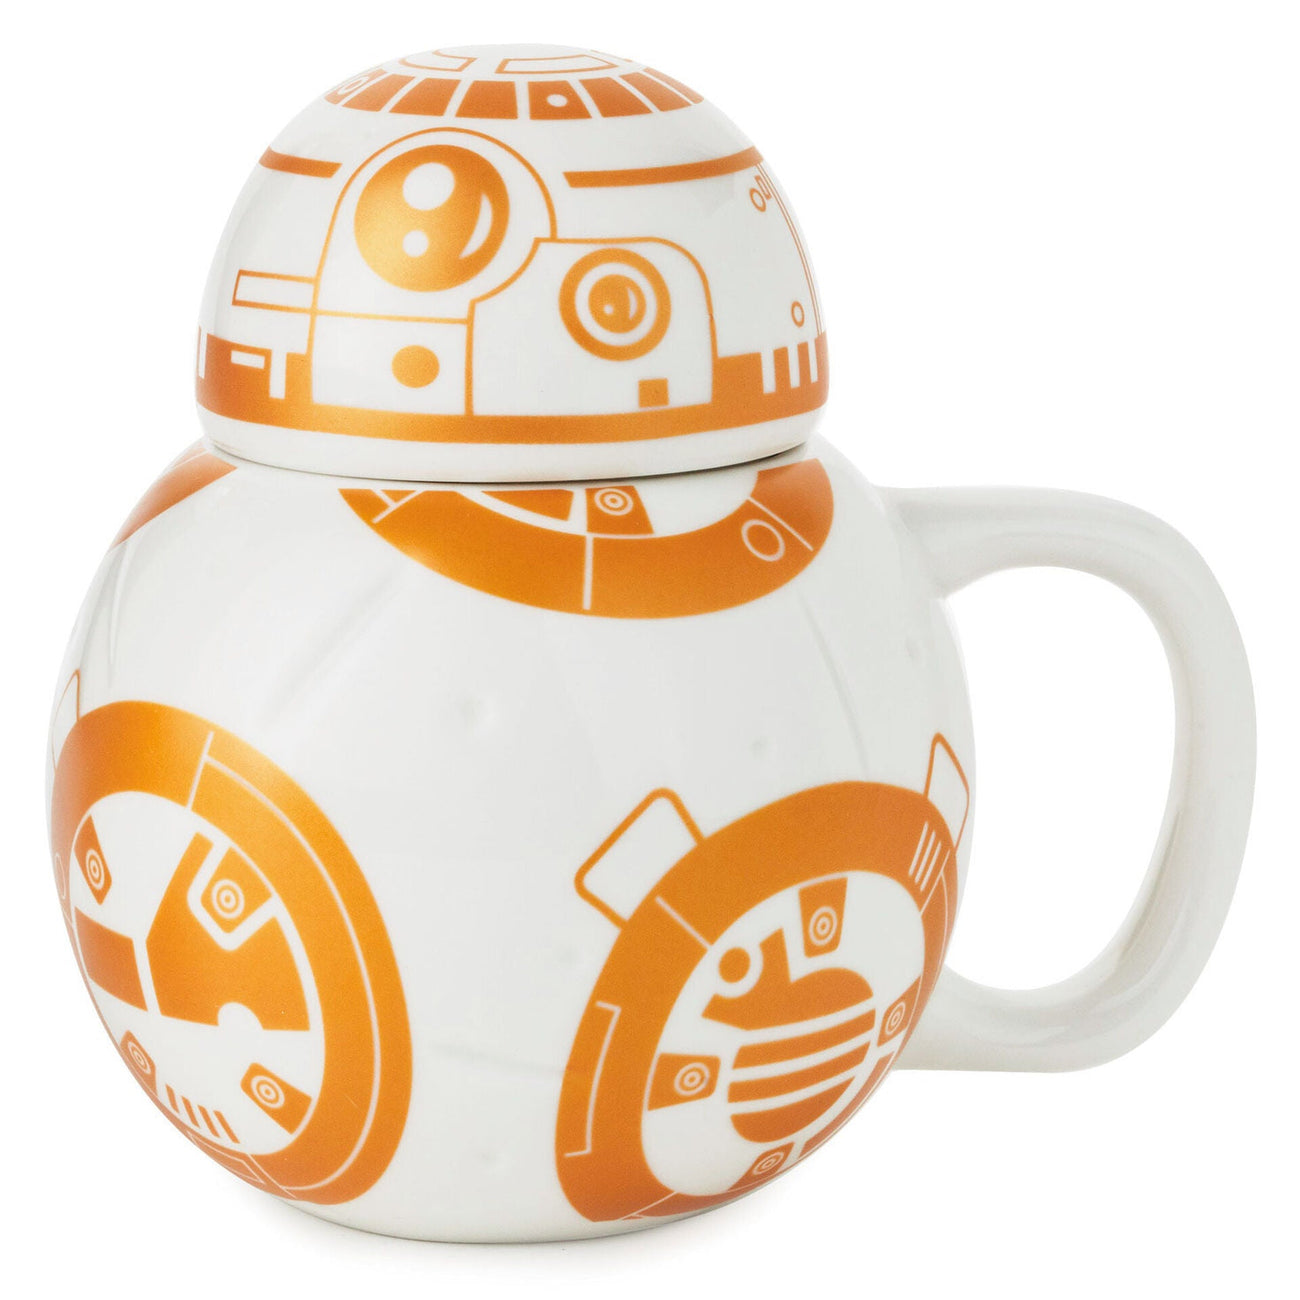 Calentador de tazas BB-8, de Star Wars - Quelovendan